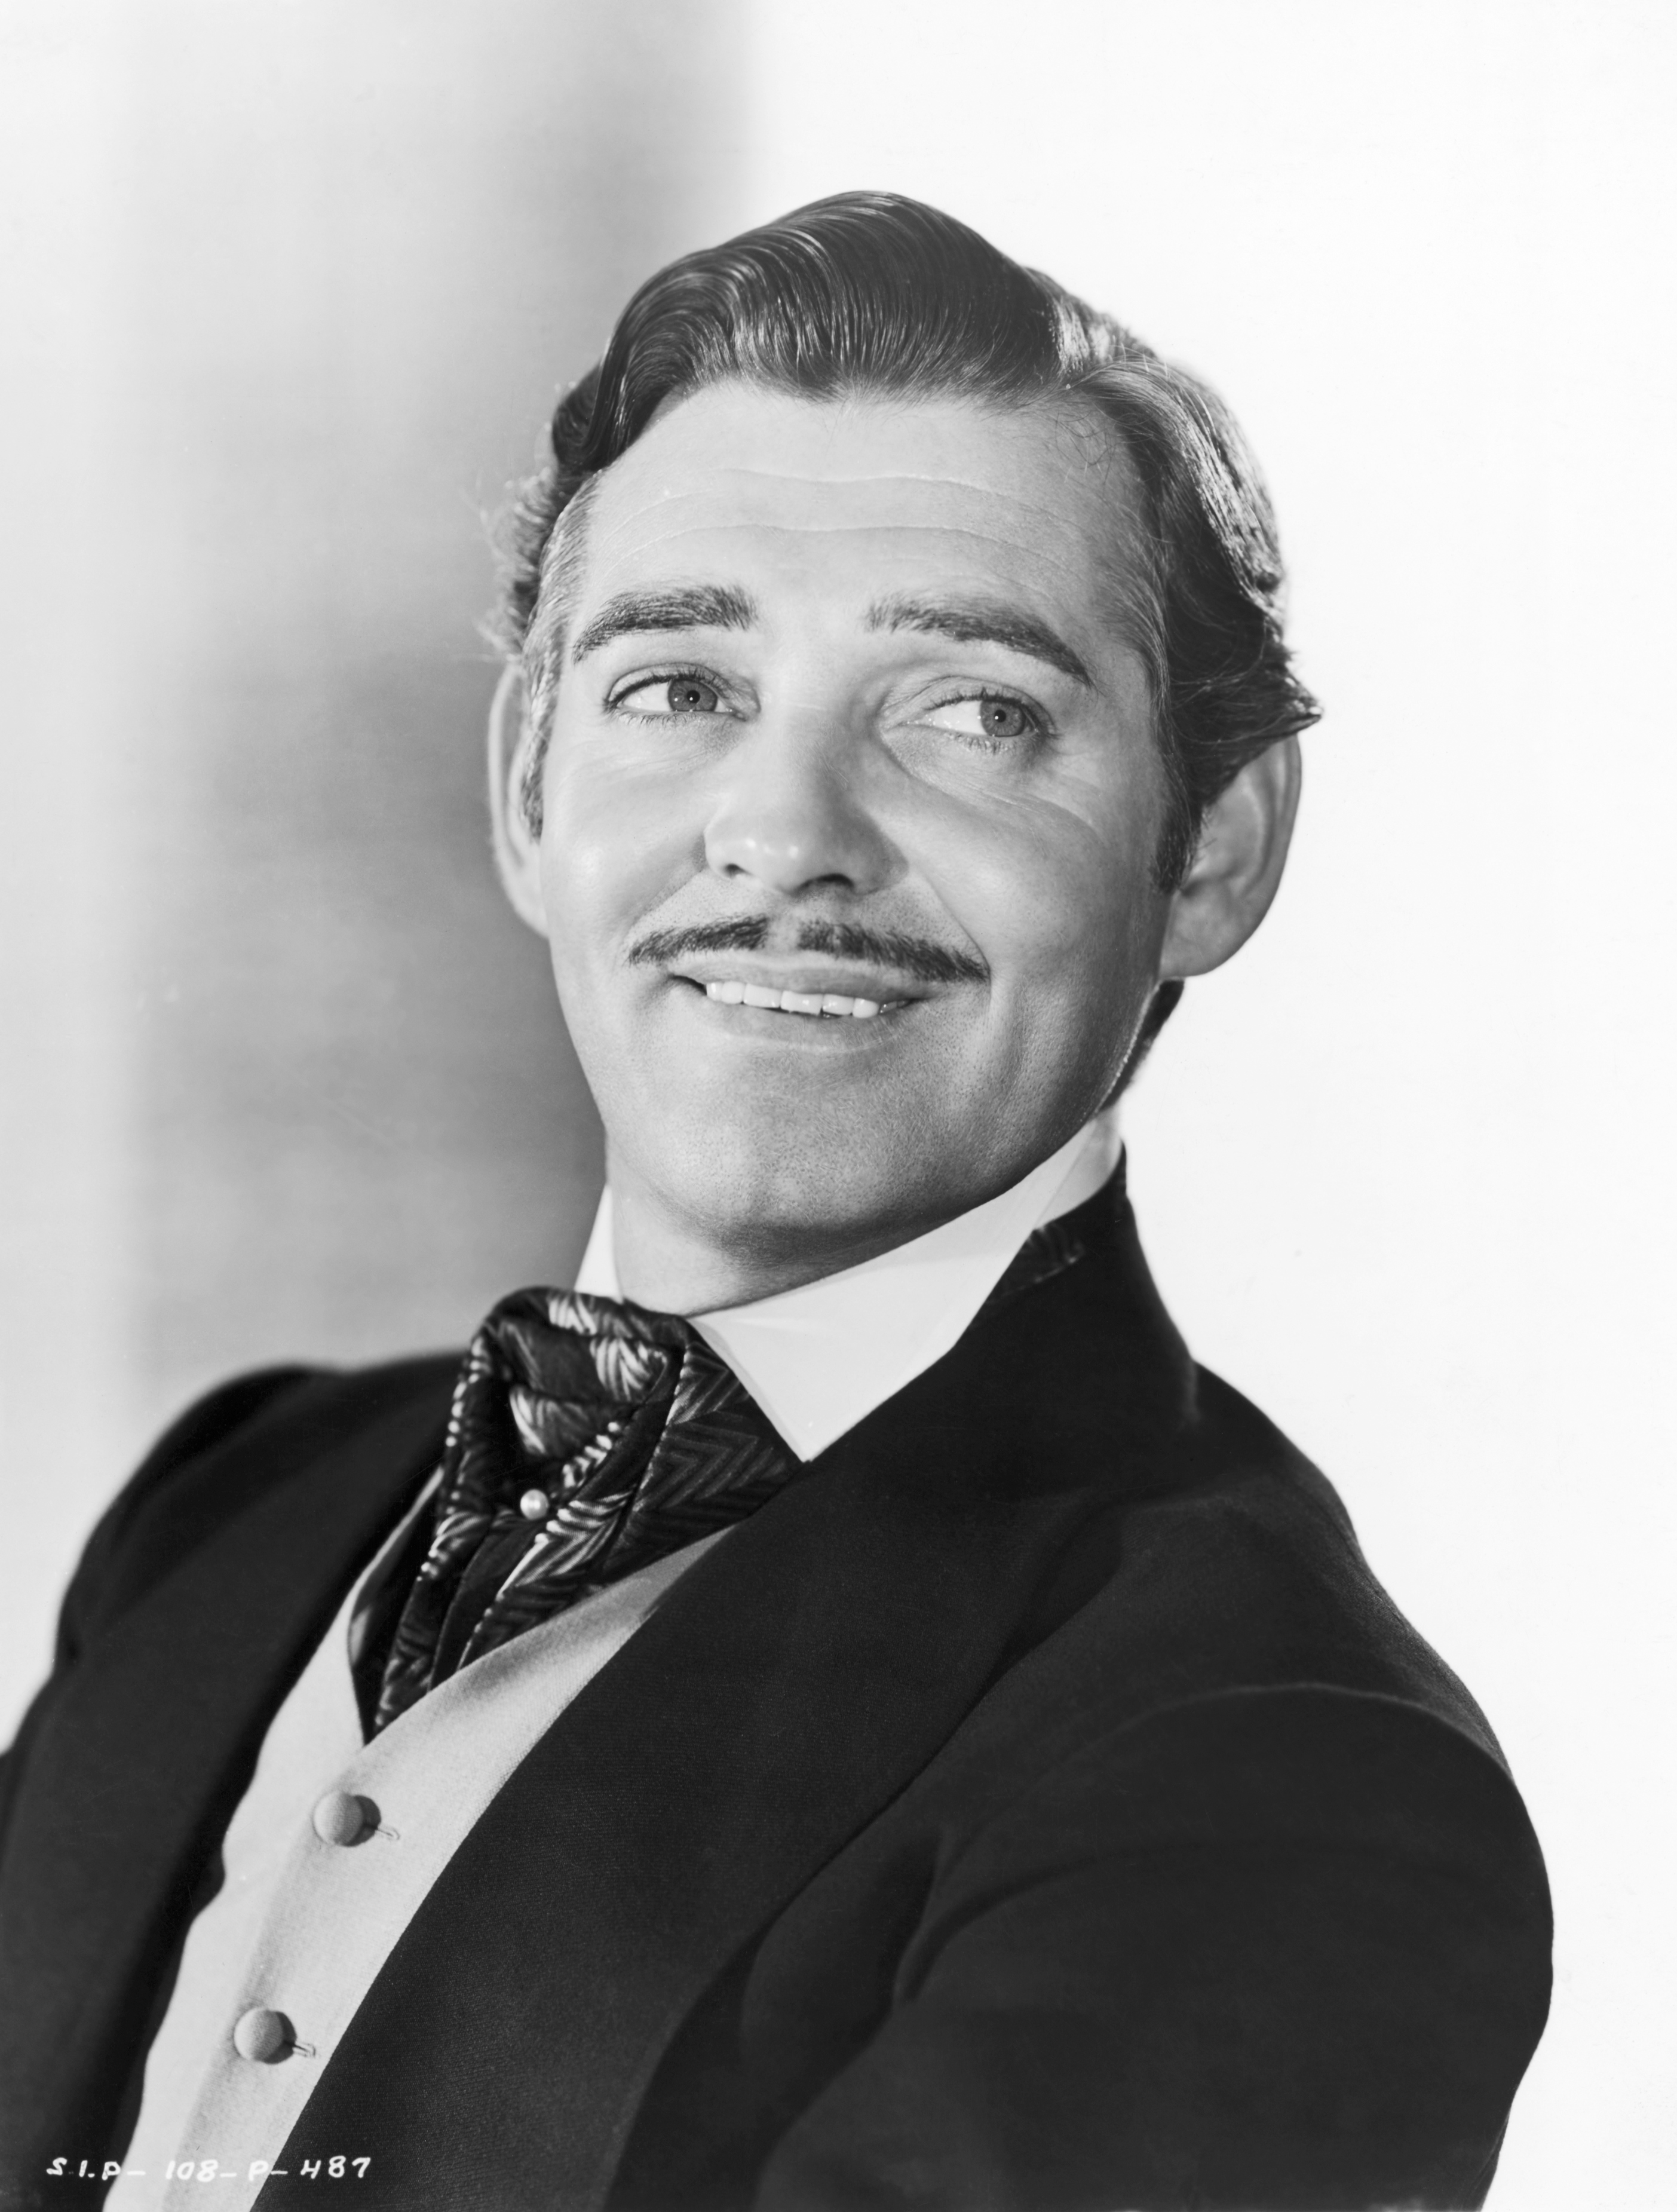 Clark Gable as Rhett Butler in 'Gone With the Wind'